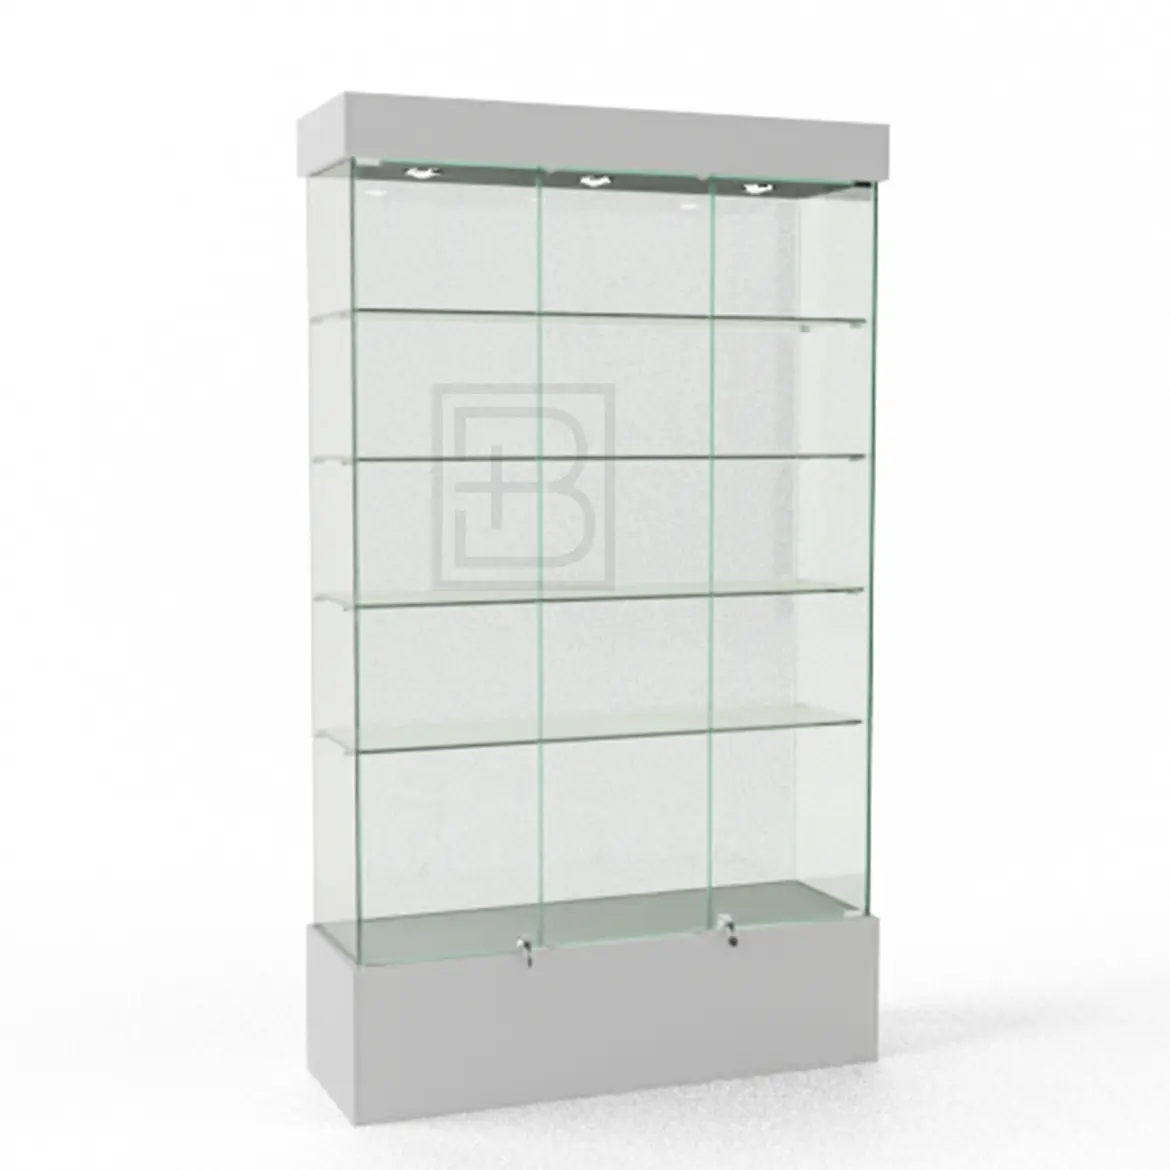 Широкая стеклянная витрина на подиуме ВСП-120 - купить по хорошей цене